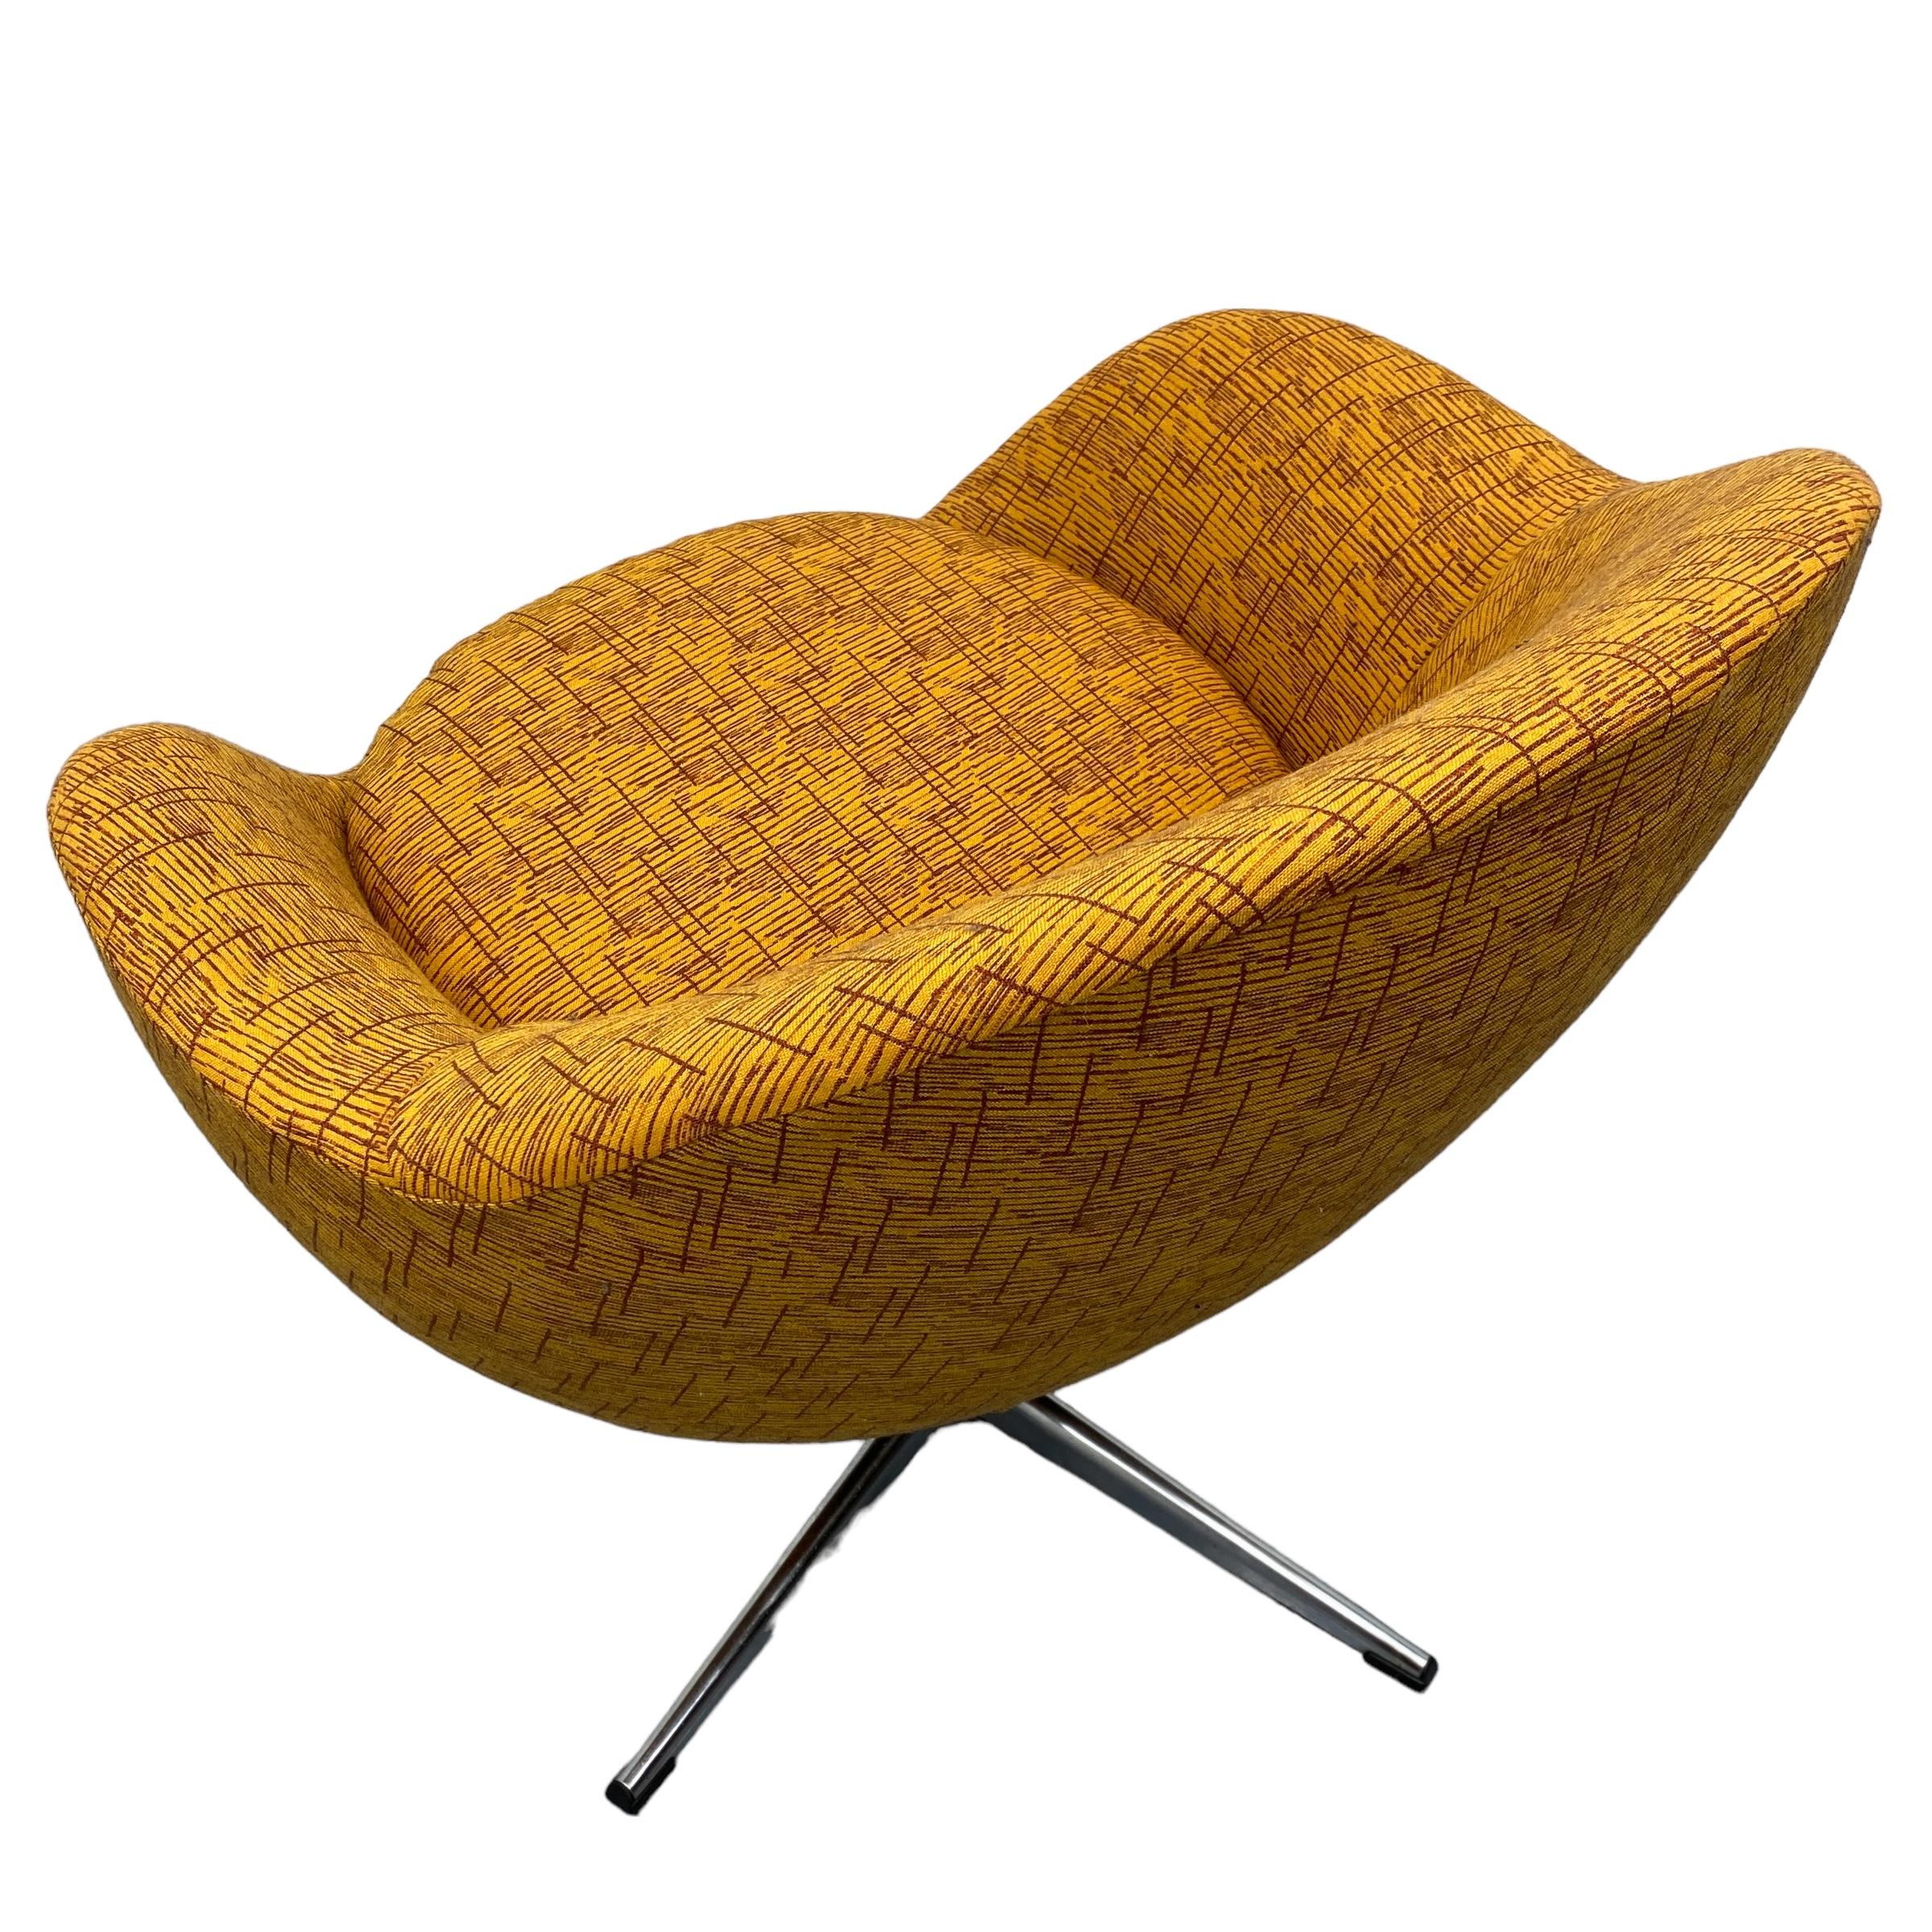 Un fabuleux fauteuil de salon du milieu du siècle par les fabricants suédois Overman. Ce fauteuil pivotant suédois est doté d'une base en acier et d'une forme incurvée intéressante. La chaise a été récemment retapissée par un professionnel dans un